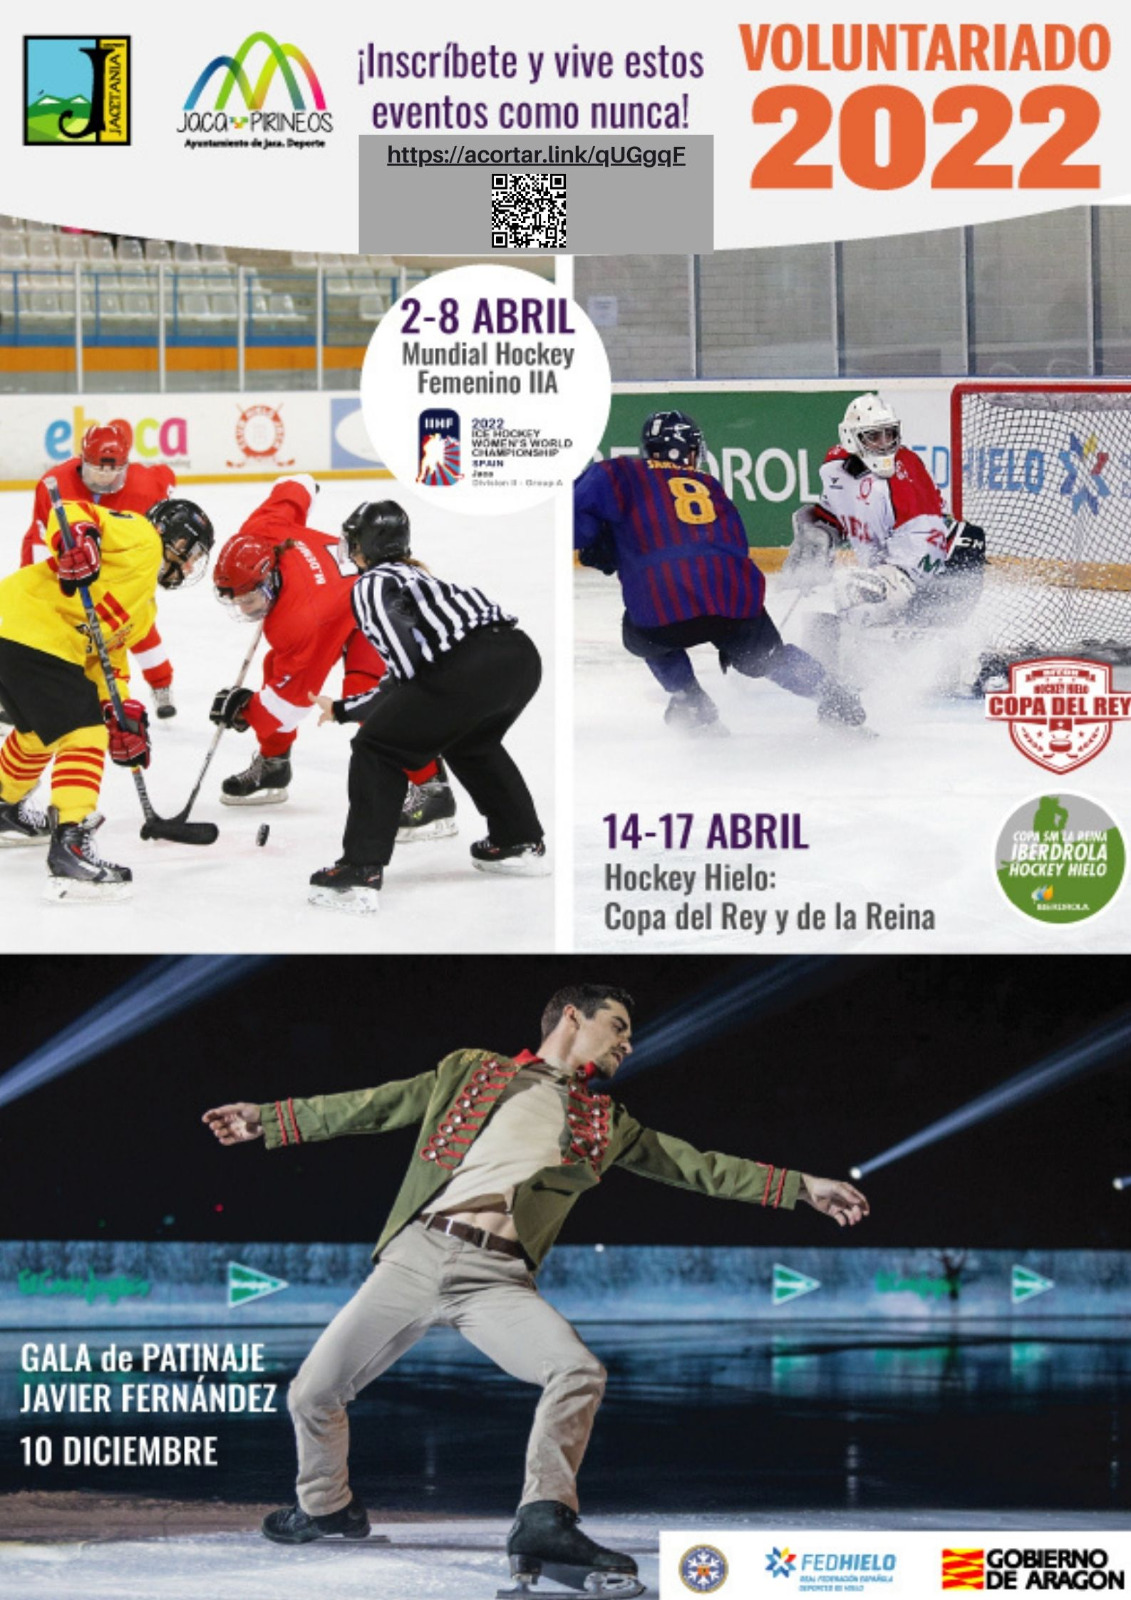 Durante 2022 Jaca acogerá diversos eventos deportivos de los que puedes formar parte como voluntario, entre ellos se encuentran el Mundial de Hockey Hielo Femenino IIA (del 2 al 8 de abril) , las Copas del Rey y de la Reina 2022 (del 14 al 17 de abril) y la Gala de Patinaje de Javier Fernández, el 10 de diciembre. ¿Quieres formar parte?  Vive estos eventos como nunca, integrándote en el equipo de voluntarios que los harán posibles.